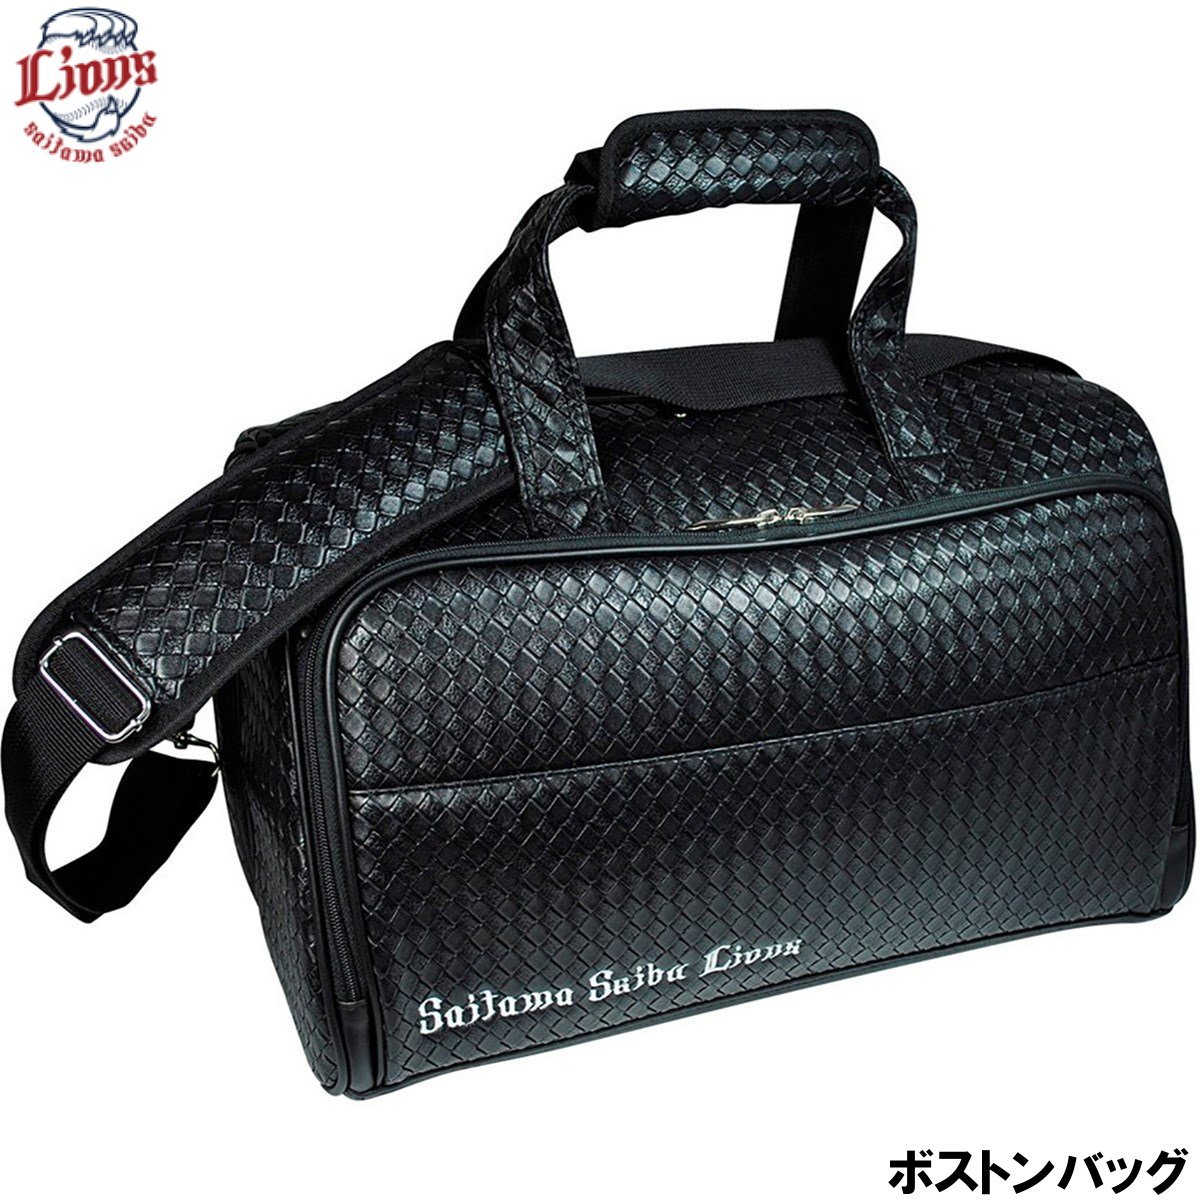 * Saitama Seibu Lions SLBB-7560 сумка "Boston bag" сеть рисунок *re Sachs / официальный Golf товары *